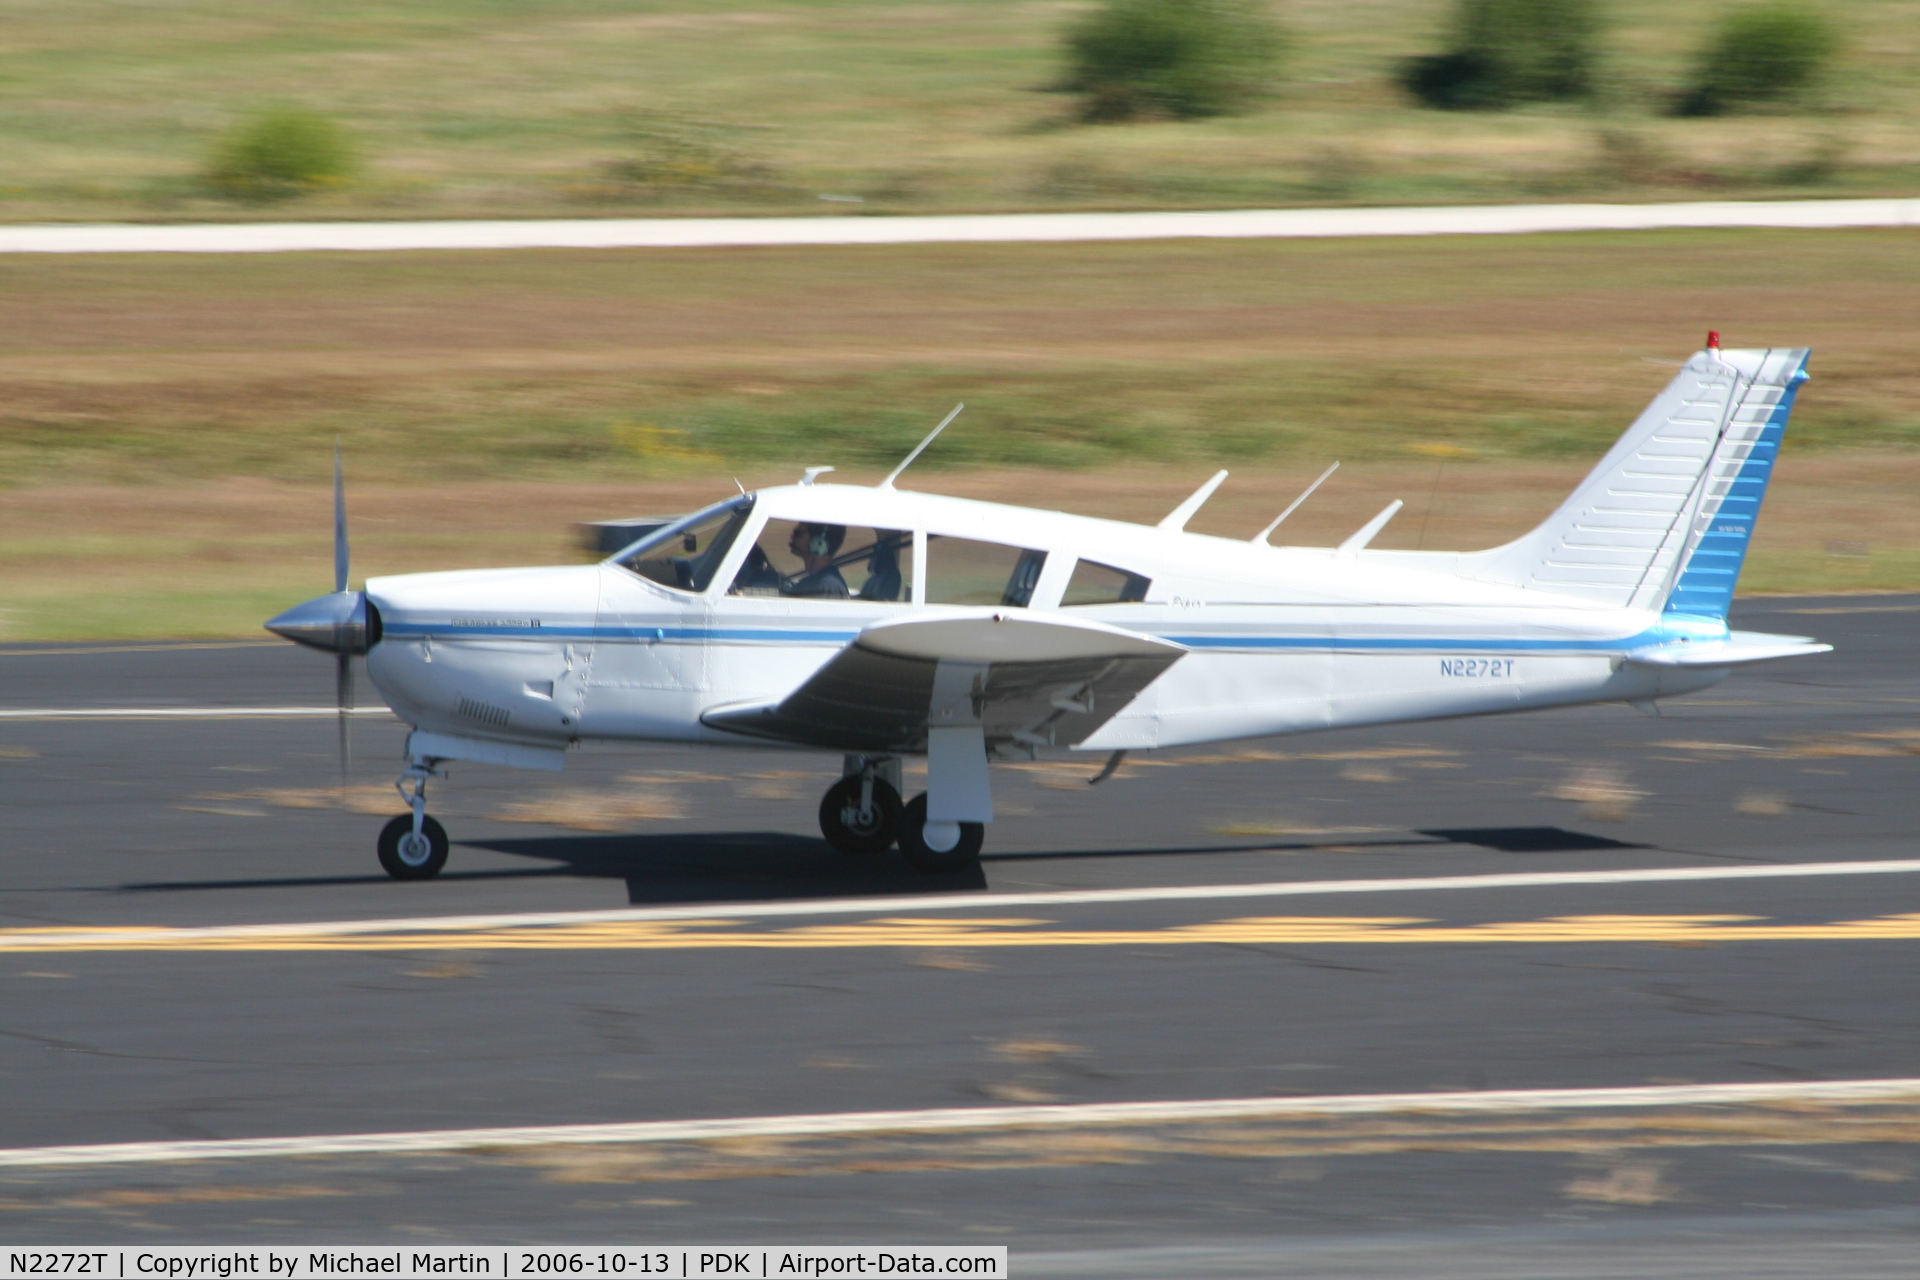 N2272T, 1972 Piper PA-28R-200 Cherokee Arrow C/N 28R-7235001, Departing Runway 34